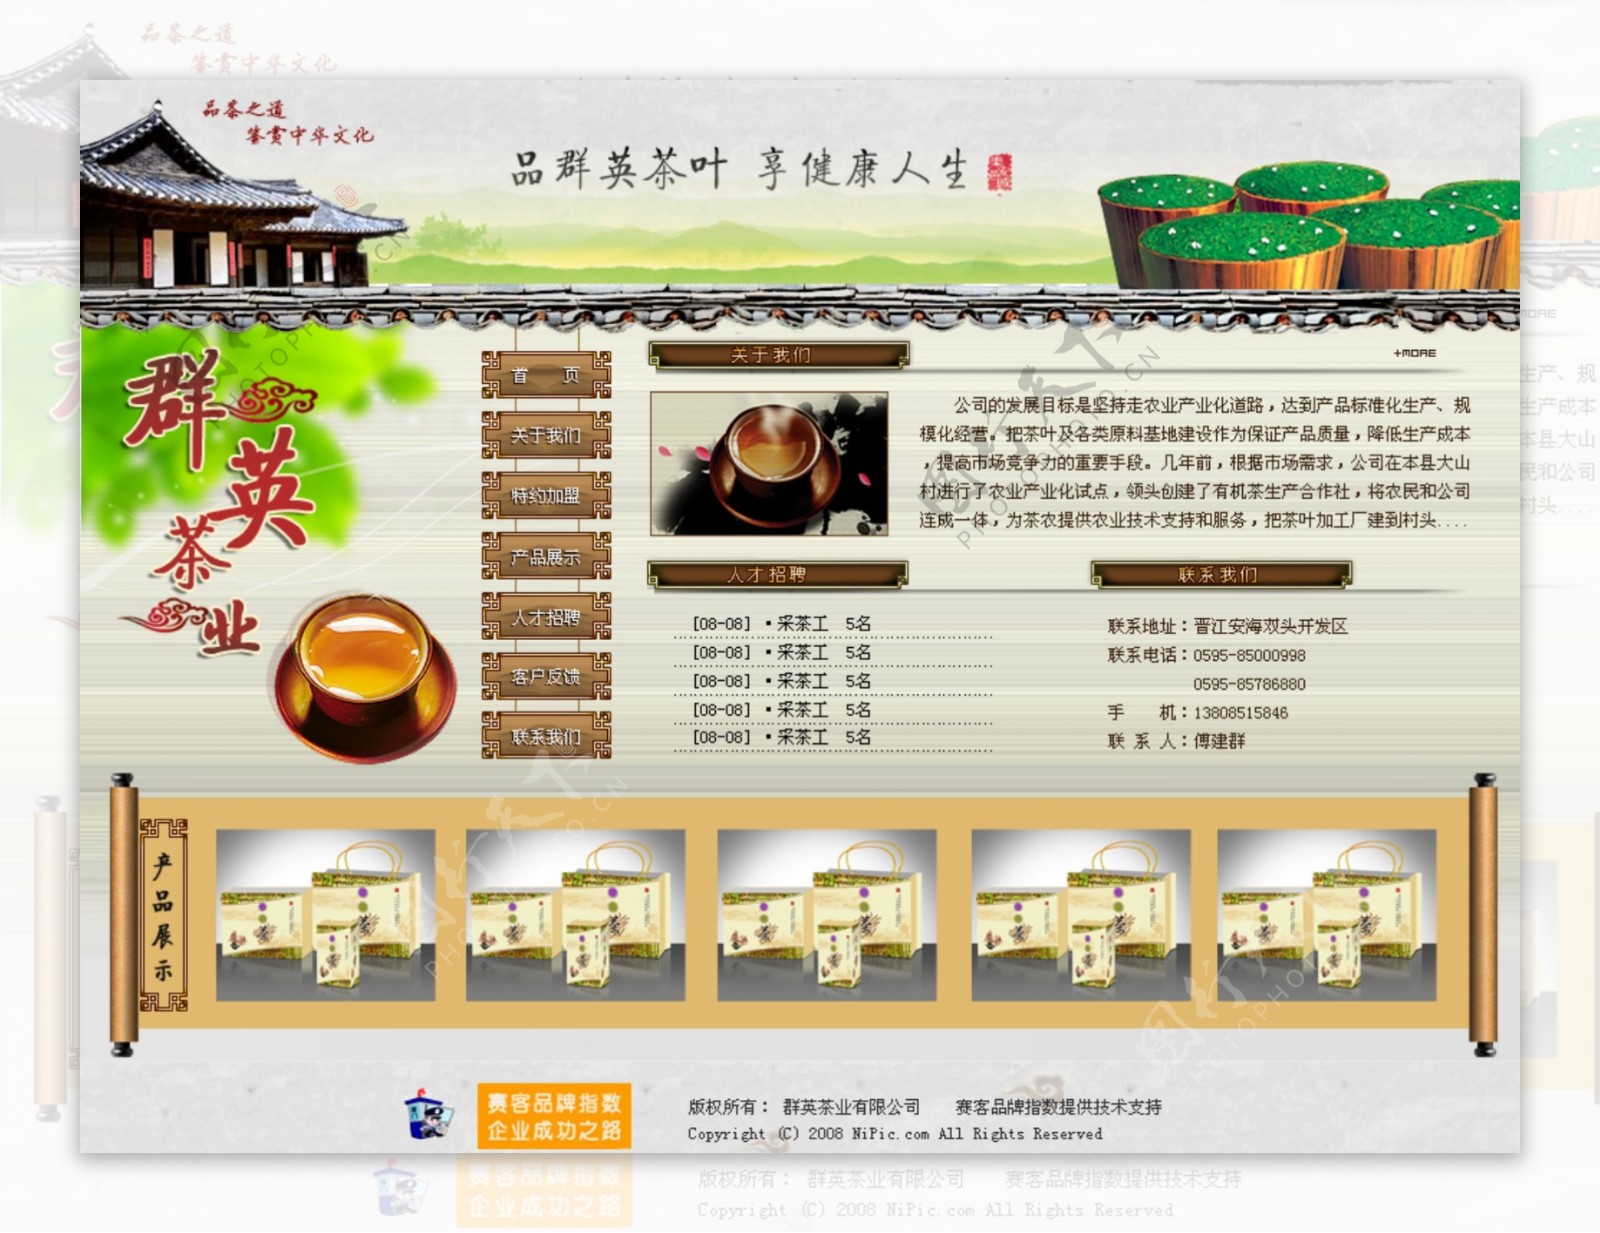 茶叶网页设计模板图片